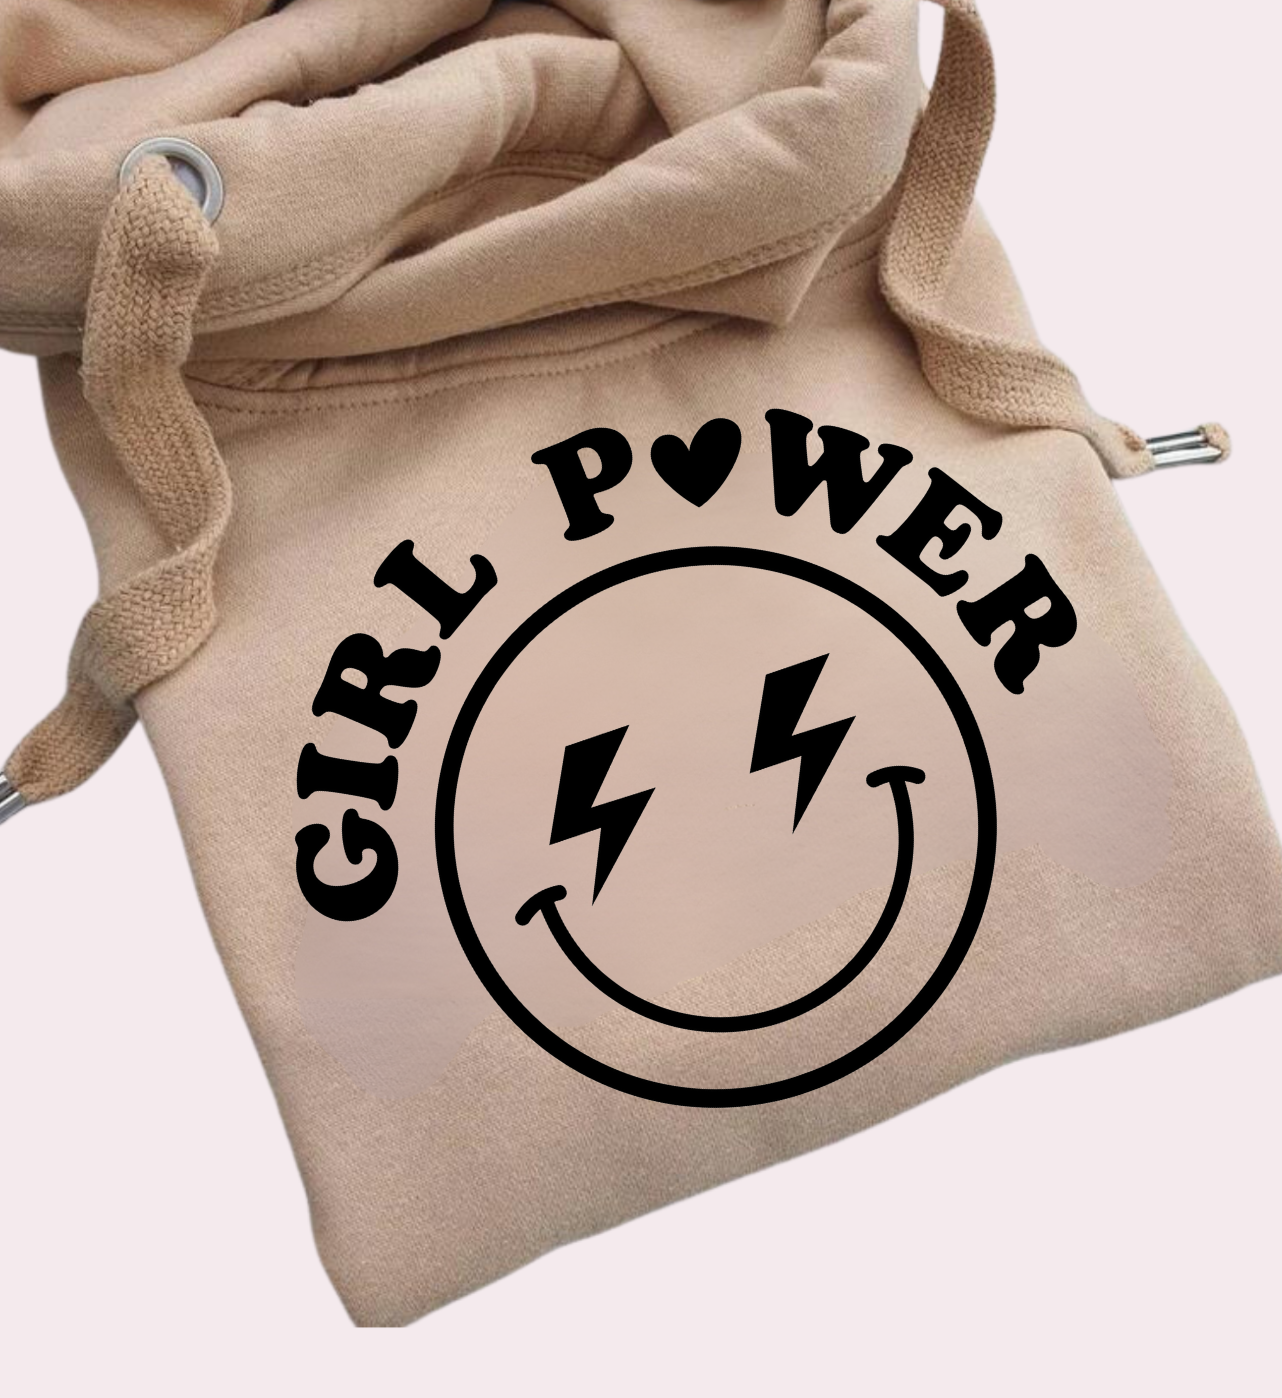 Luxe Hoody - Girl Power